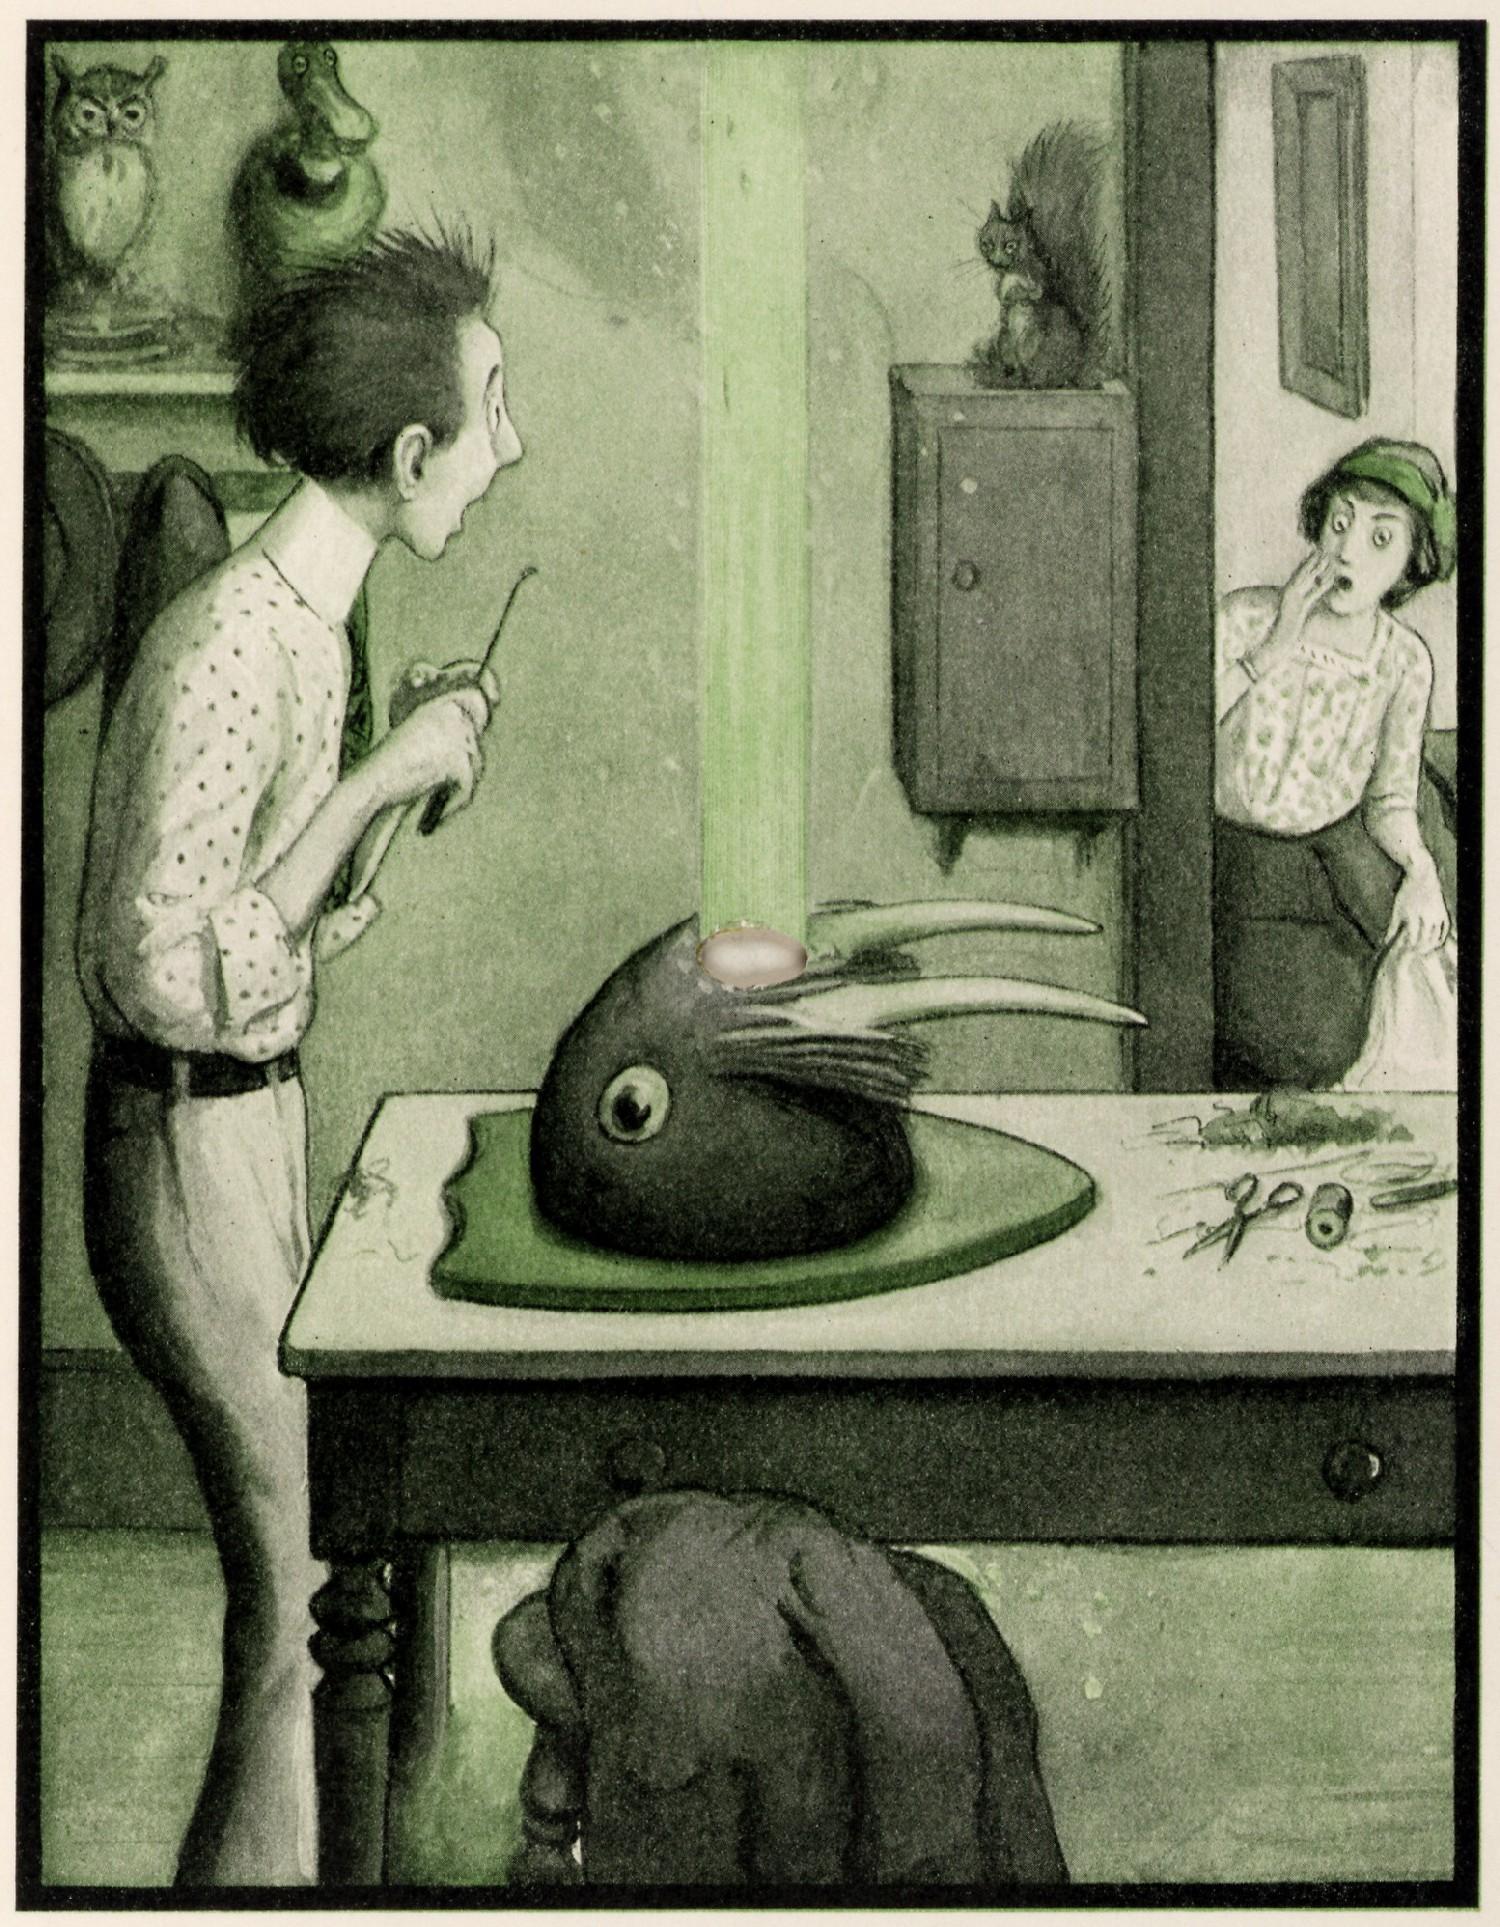 The Rocket Book - Une fabuleuse histoire illustrée pour enfants de 1912